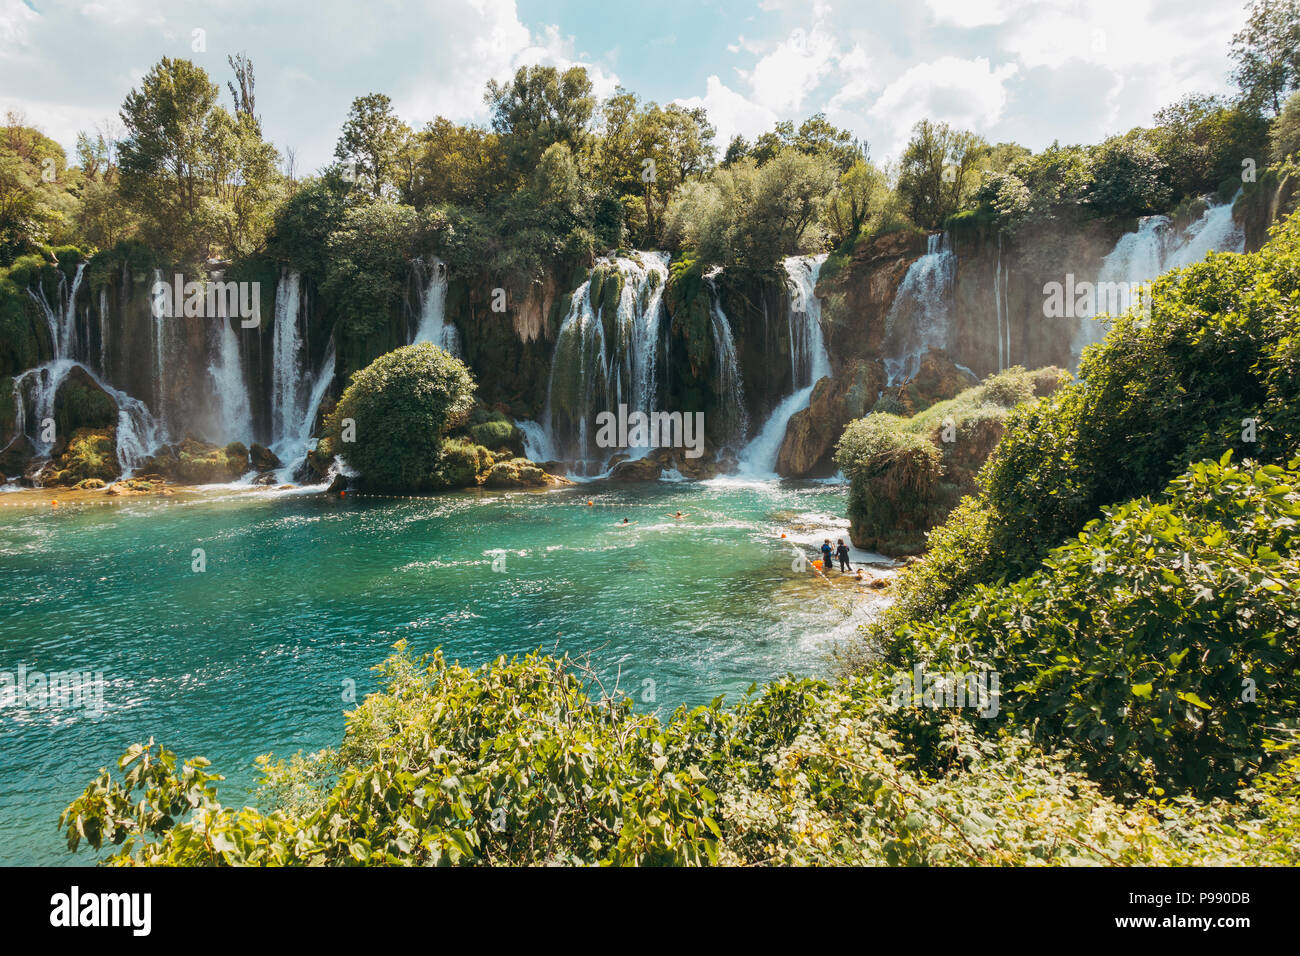 Cascade de Kravica, une magnifique cascade fréquentés par les touristes dans le chaud des étés des Balkans. Situé sur la rivière Trebižat près de Ljubuški, BiH Banque D'Images